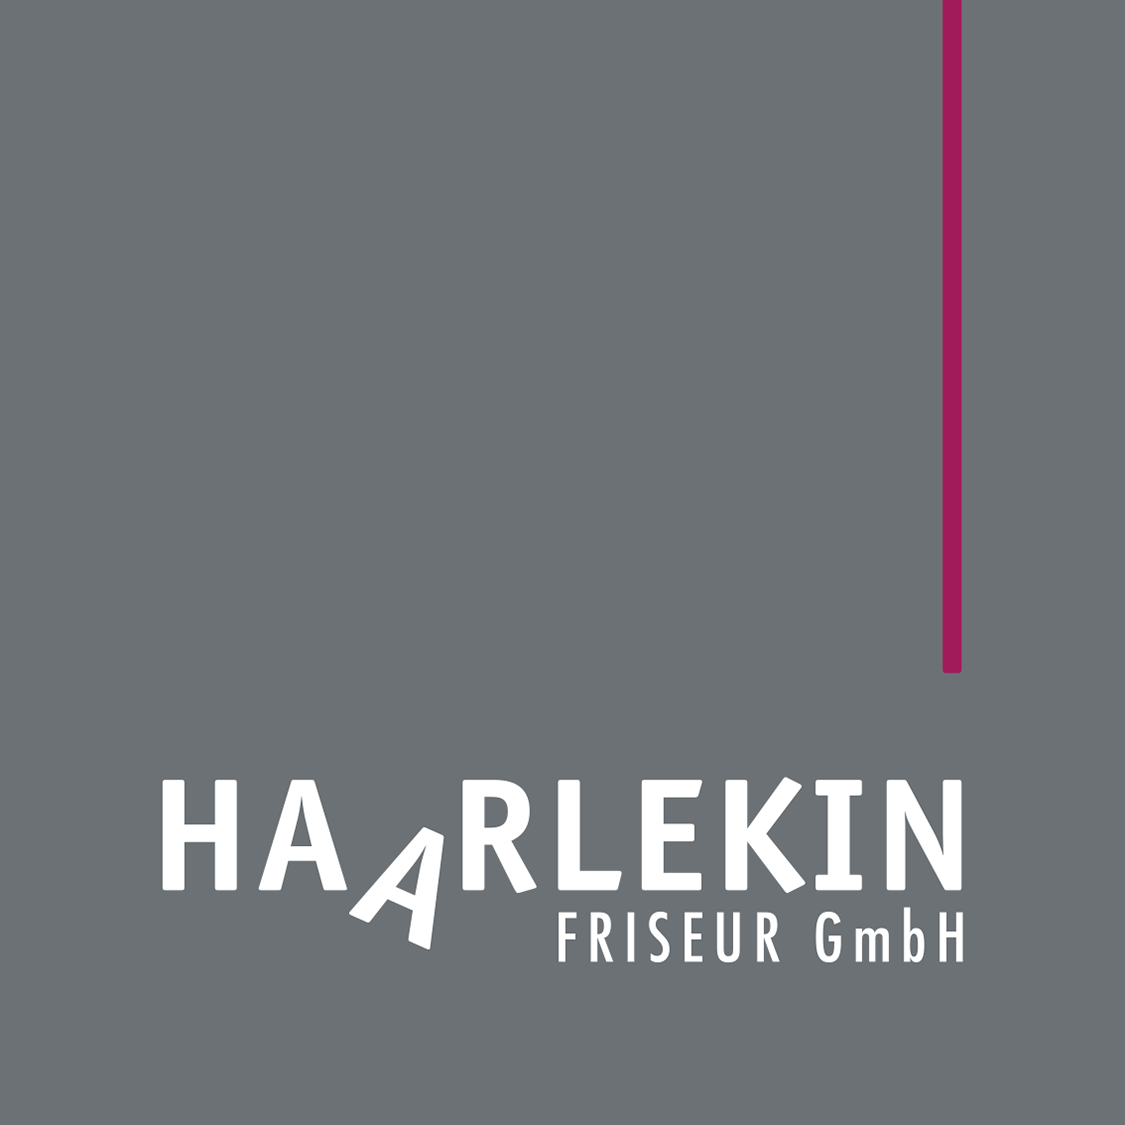 Ansicht des Logos für den Friseur Haarlekin in Neustrelitz als Bestandtteil der Werbung.